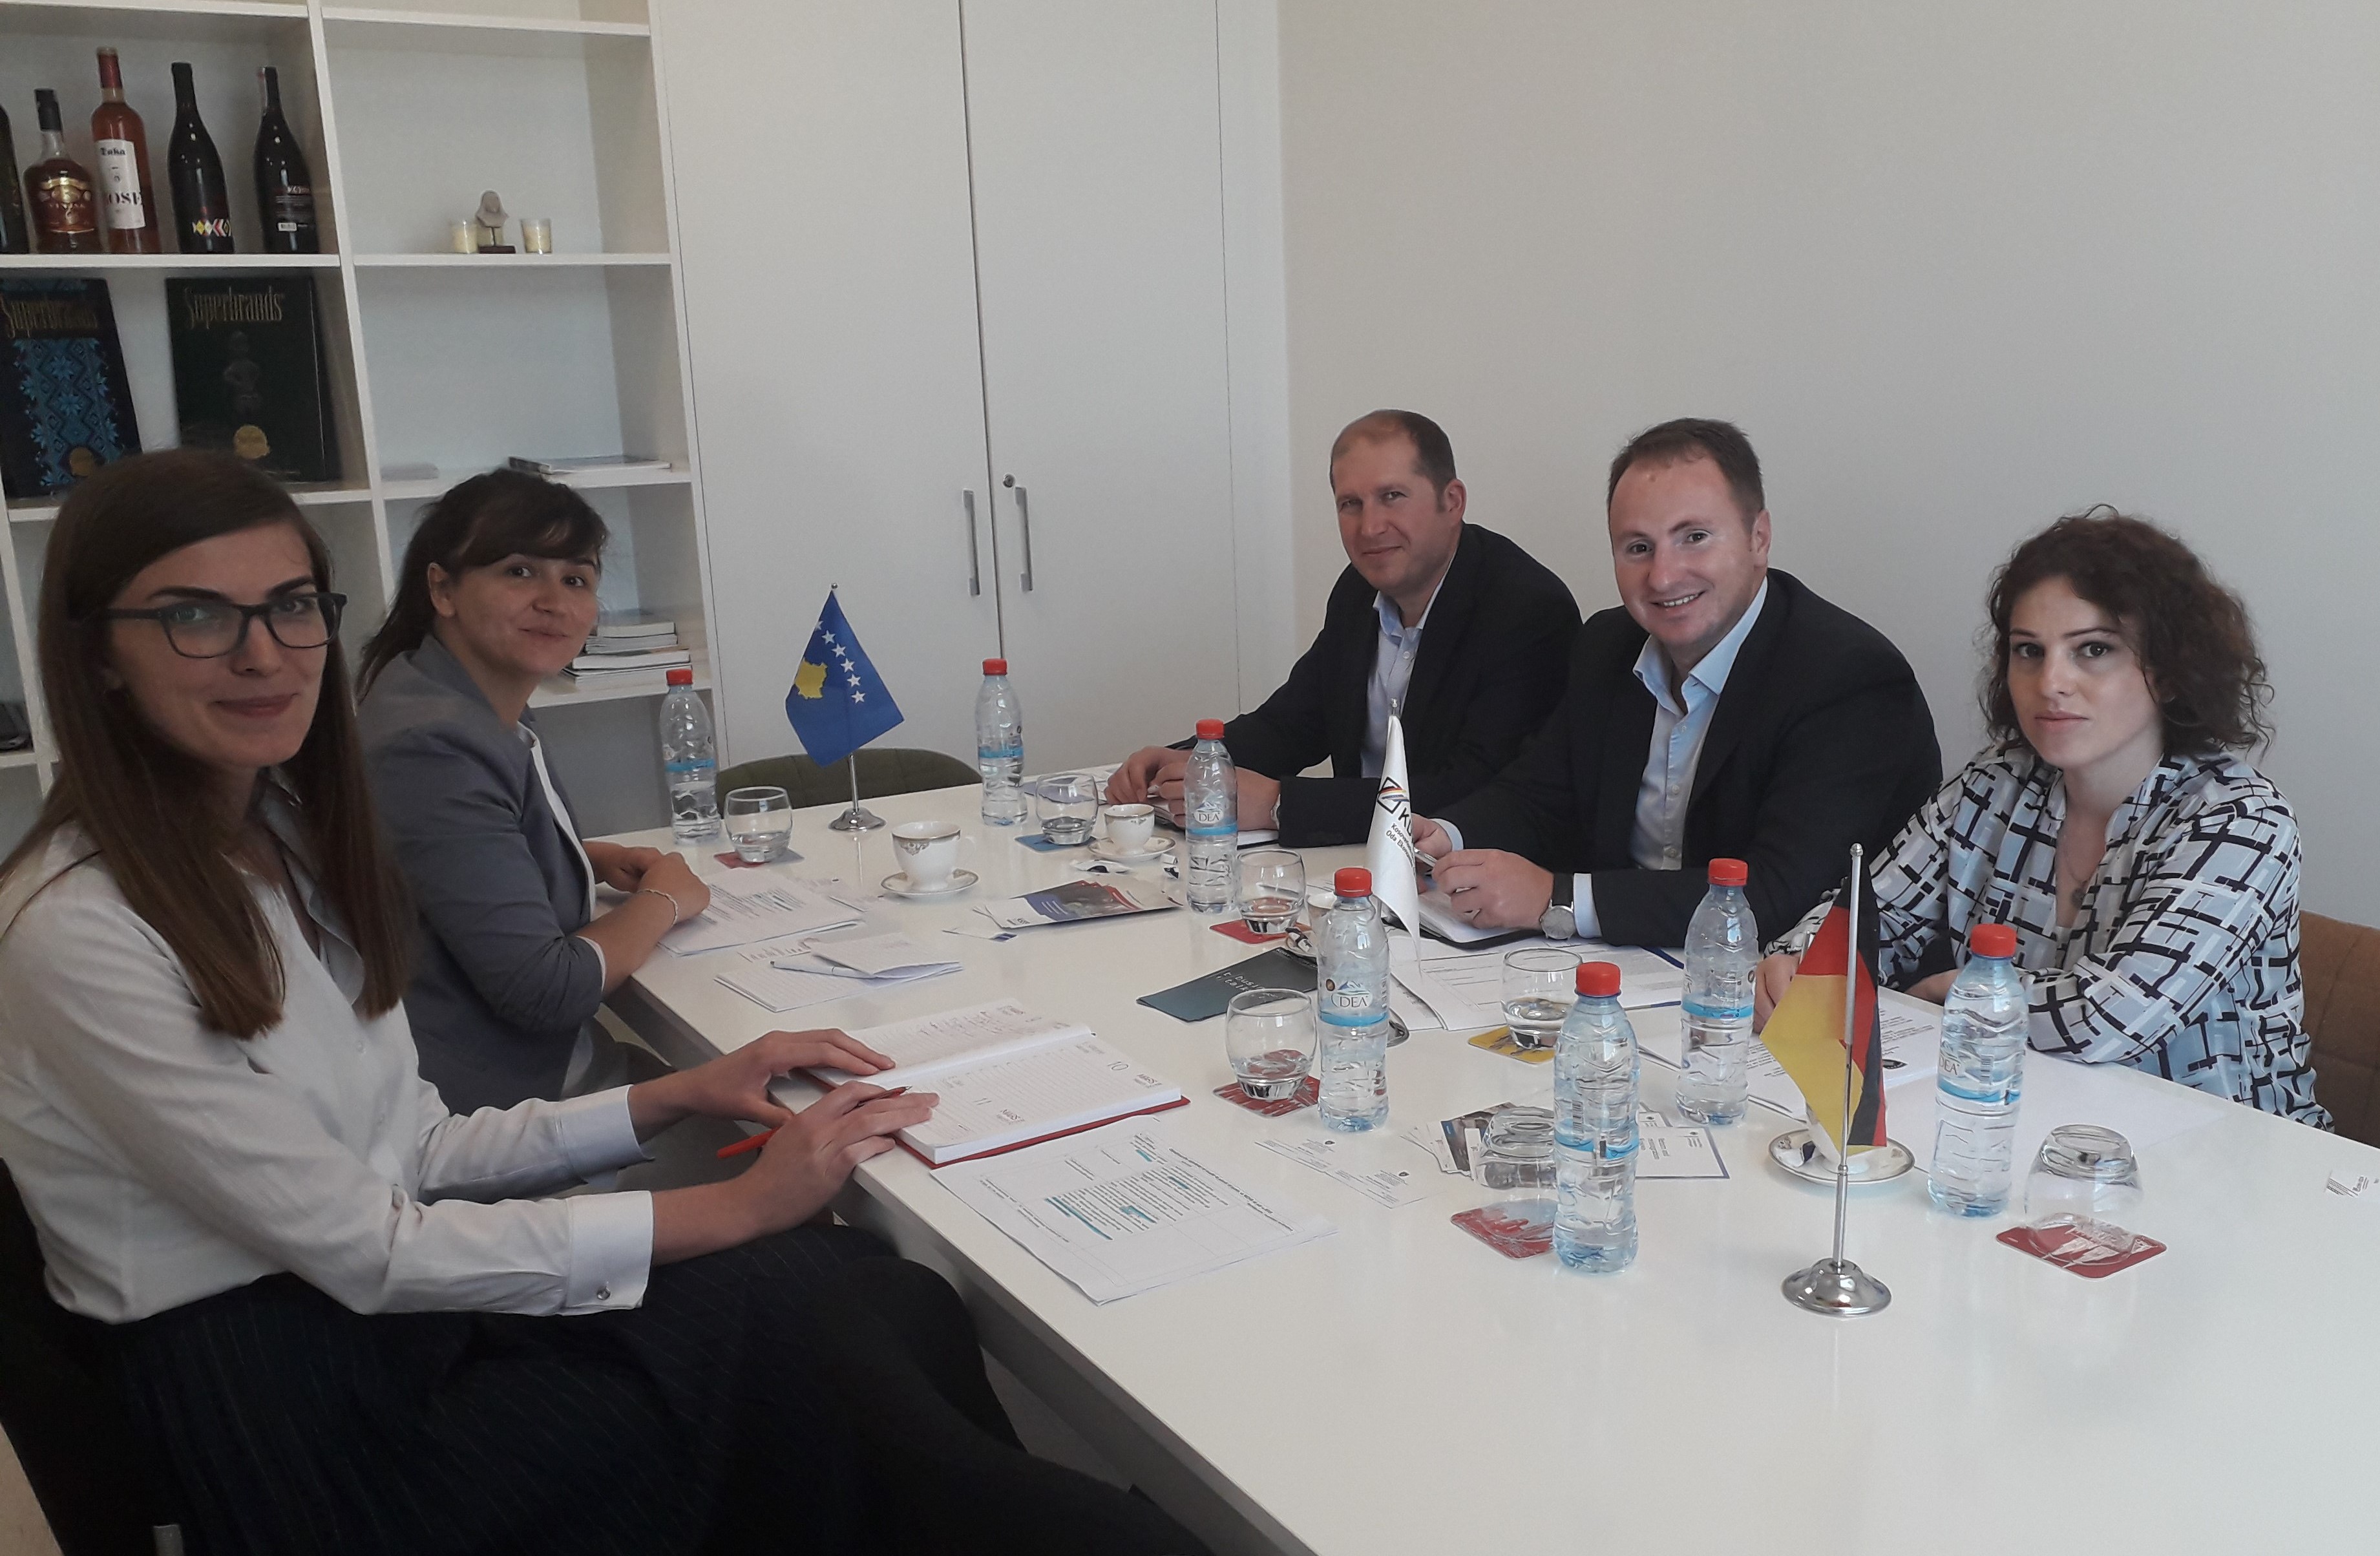 MZHR dhe Oda Ekonomike Gjermane në Kosovës mbajnë takim për shqyrtimin e mundësive për bashkëpunim në të ardhmen